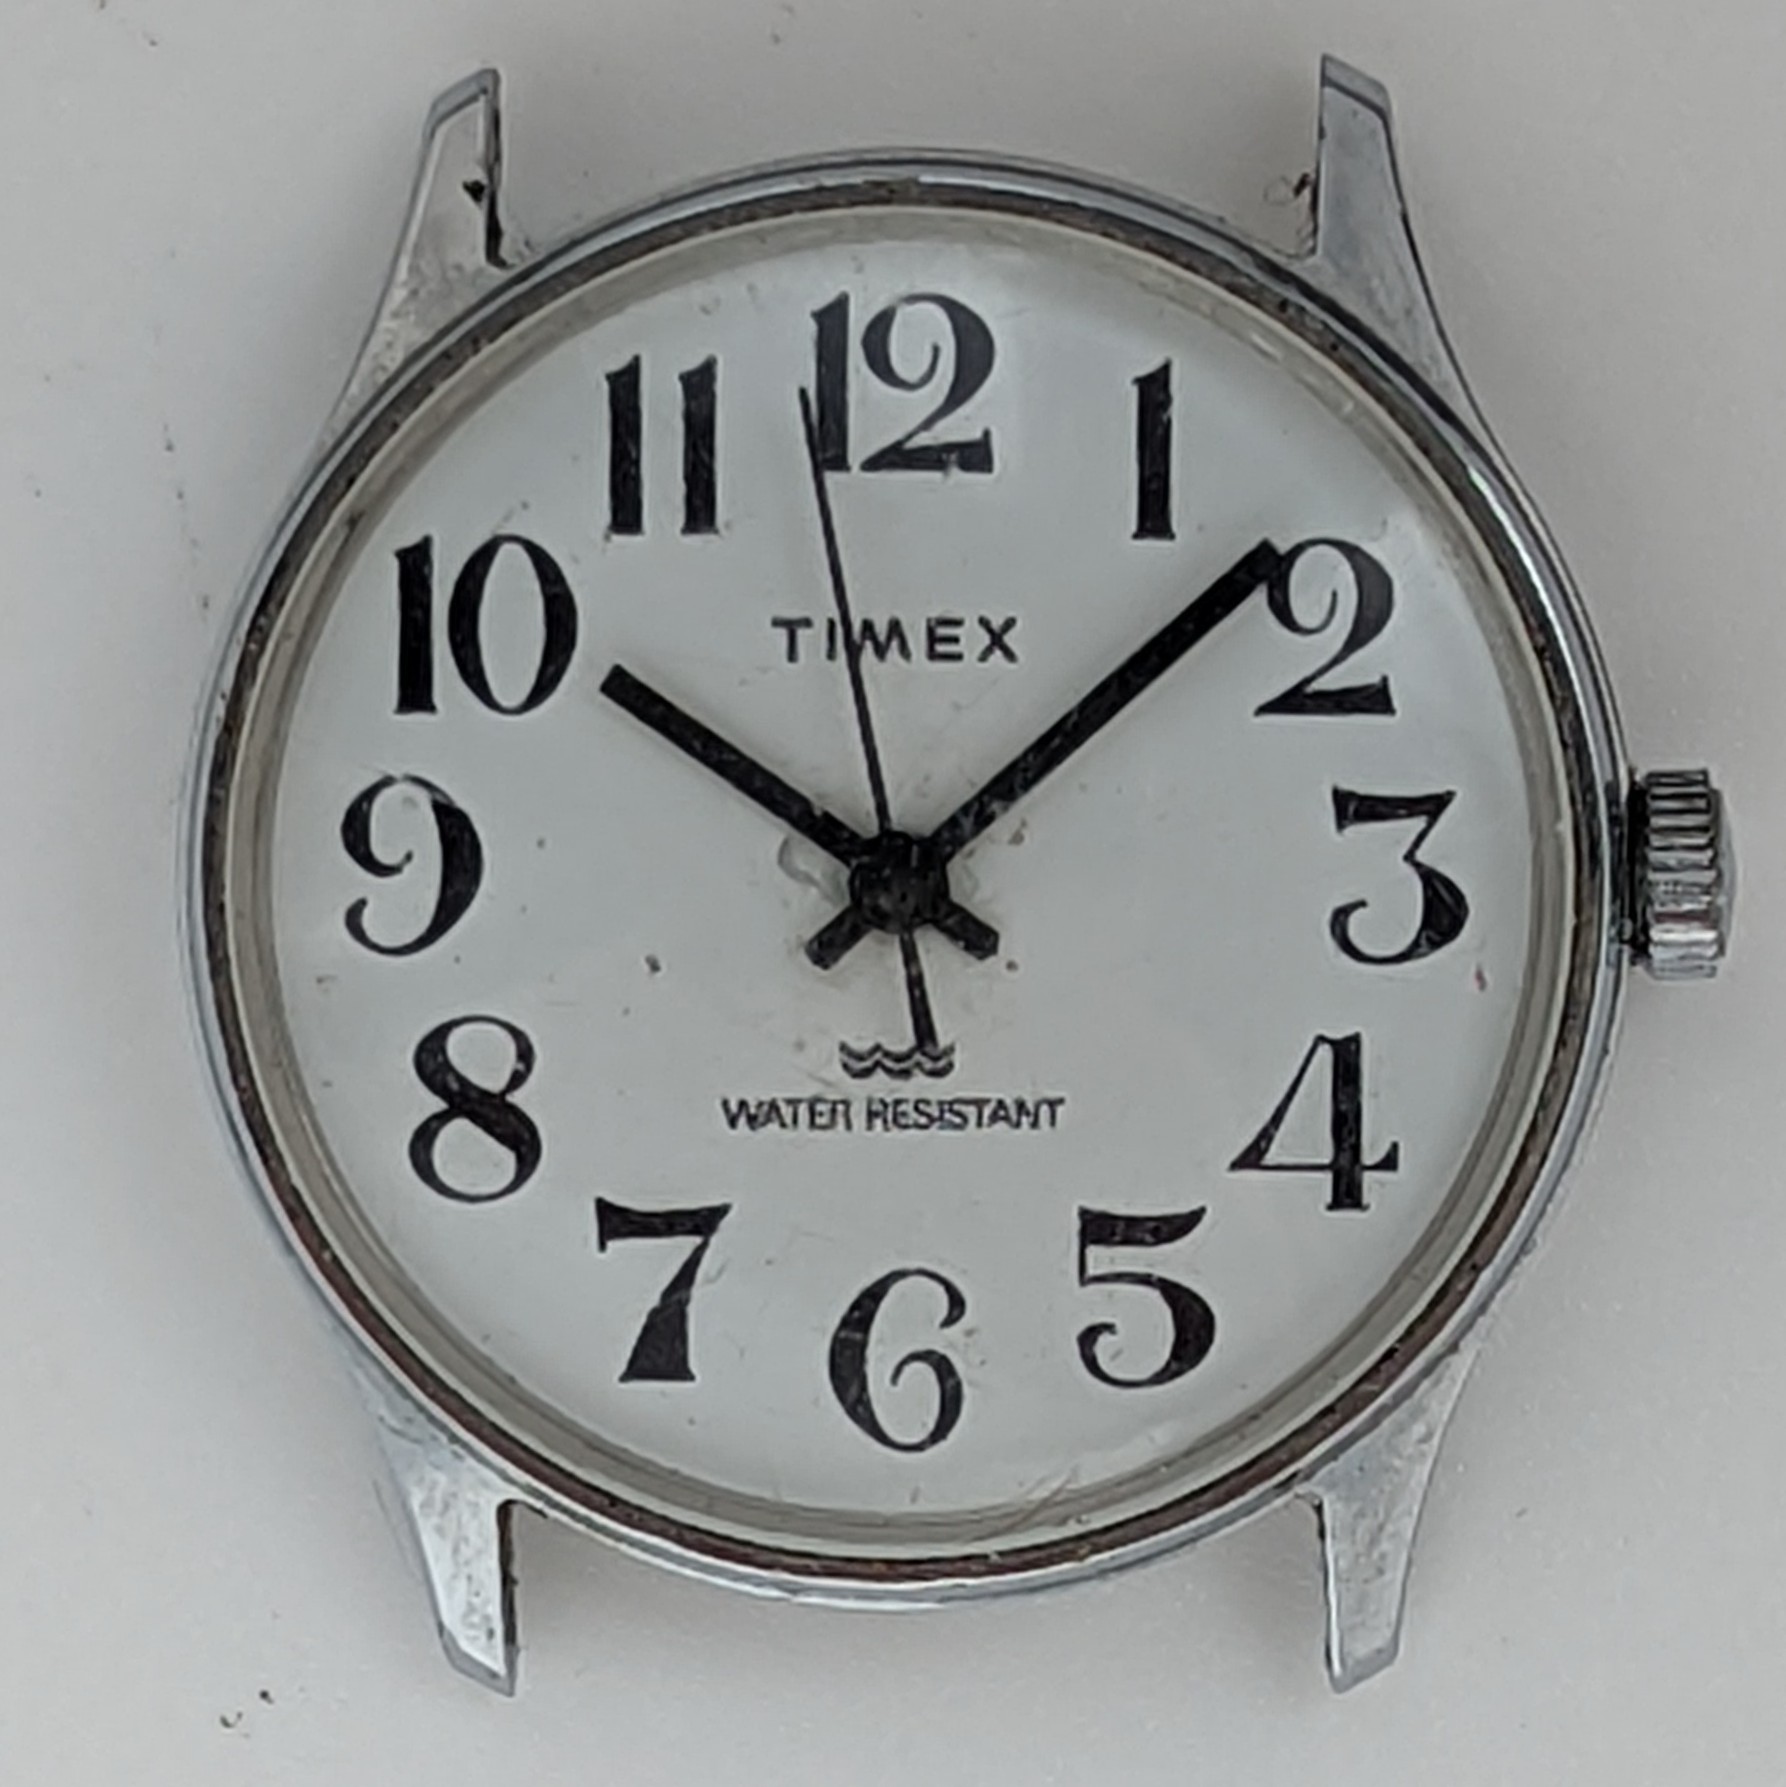 Timex Marlin 20542 11682 [1982]